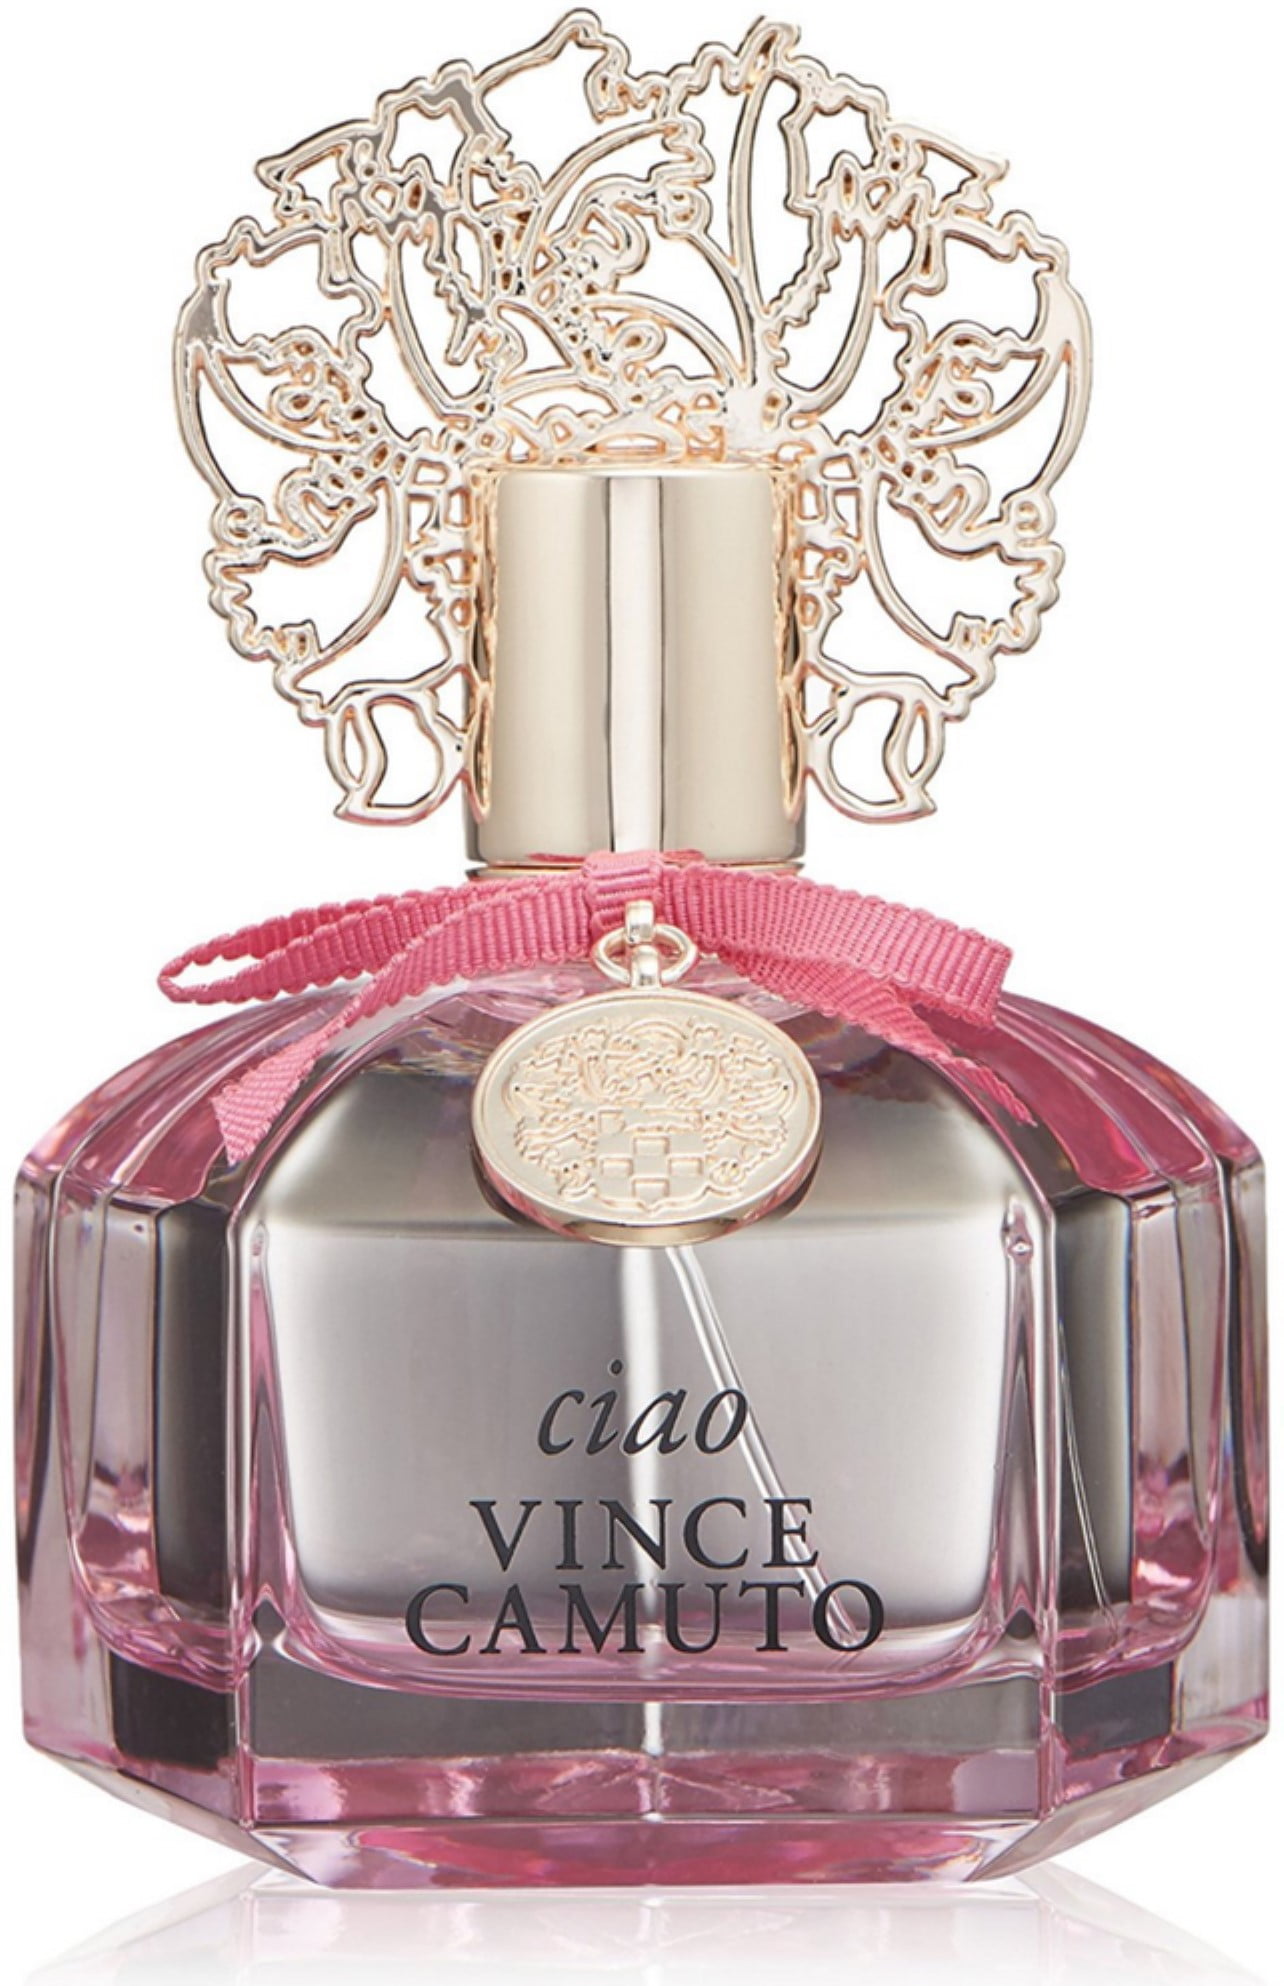 Vince Camuto Ciao Eau de Parfum Spray For Women 3.4 oz (Pack of 2) 